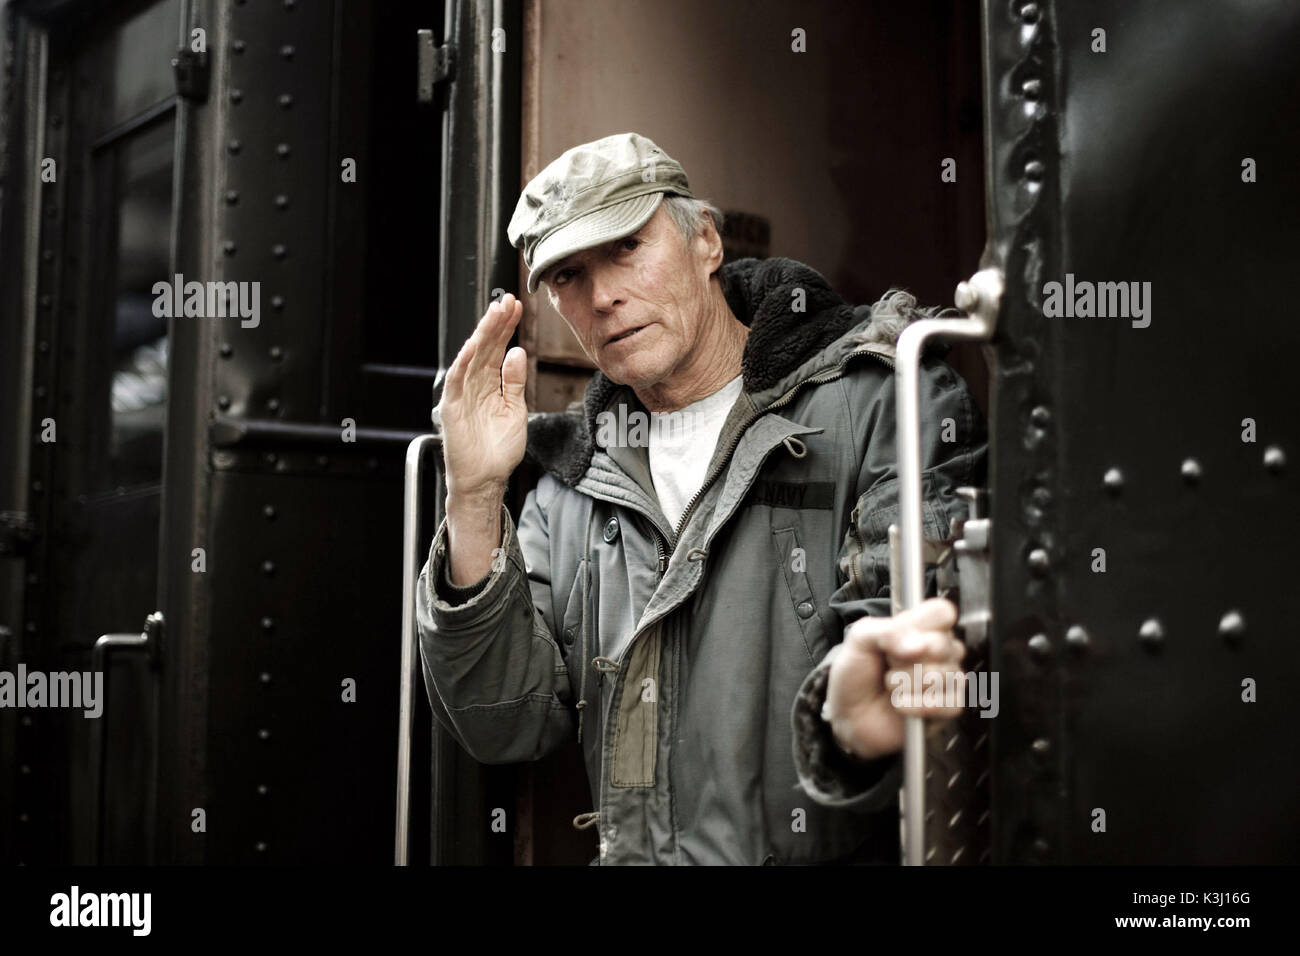 Im Bild: Regisseur Clint Eastwood am Set von "Paramount Pictures und Warner Bros. Pictures' Weltkrieg II drama FLAGS unserer Väter, von Clint Eastwood. Flaggen unserer Väter [USA 2006] Regisseur Clint Eastwood auf Datum: 2006 Stockfoto